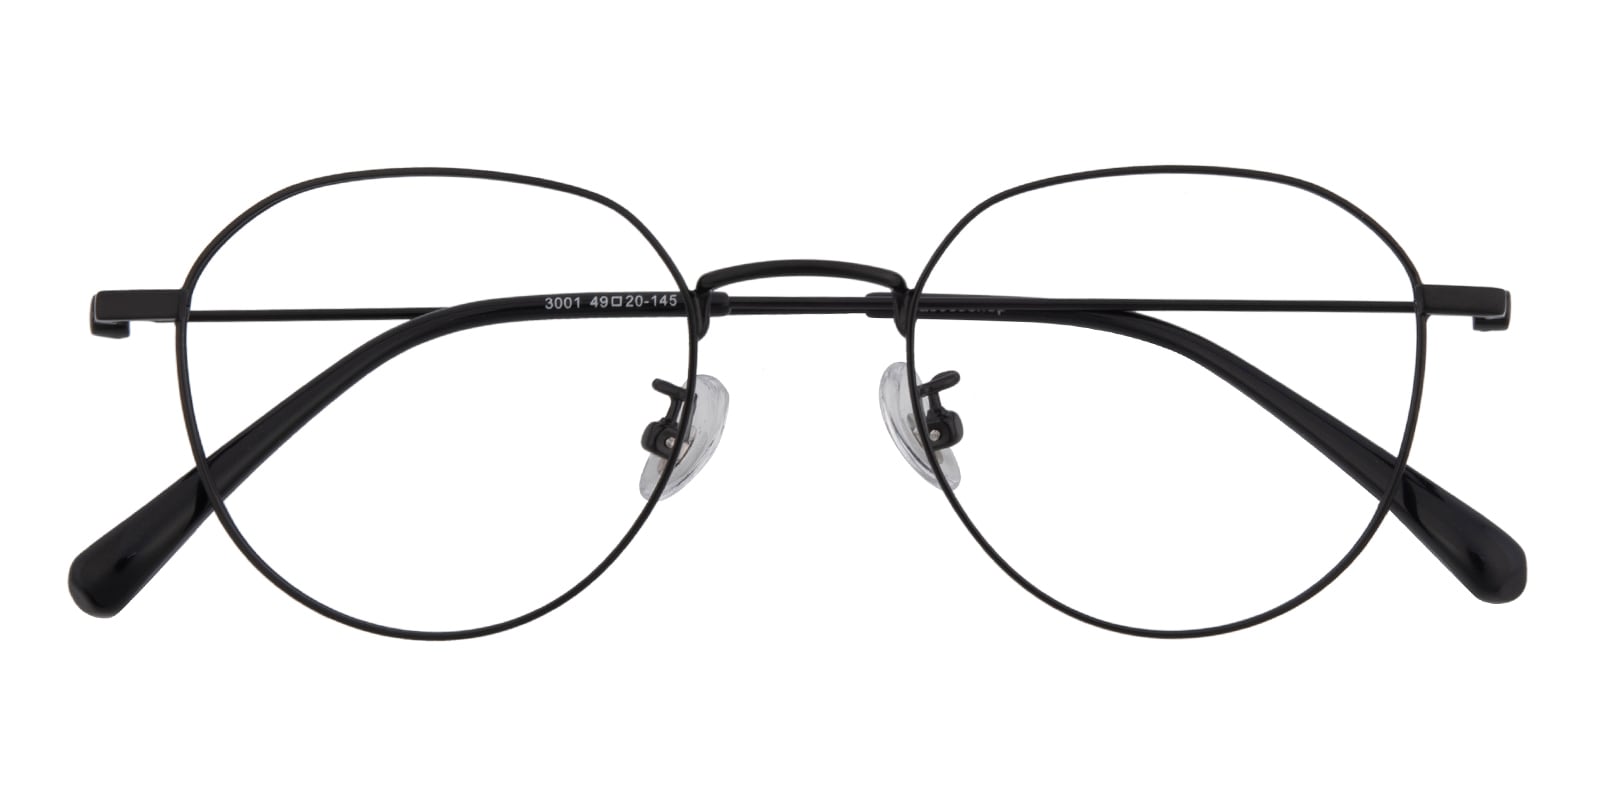 Oval Eyeglasses, Full Frame Black Metal - FM1822